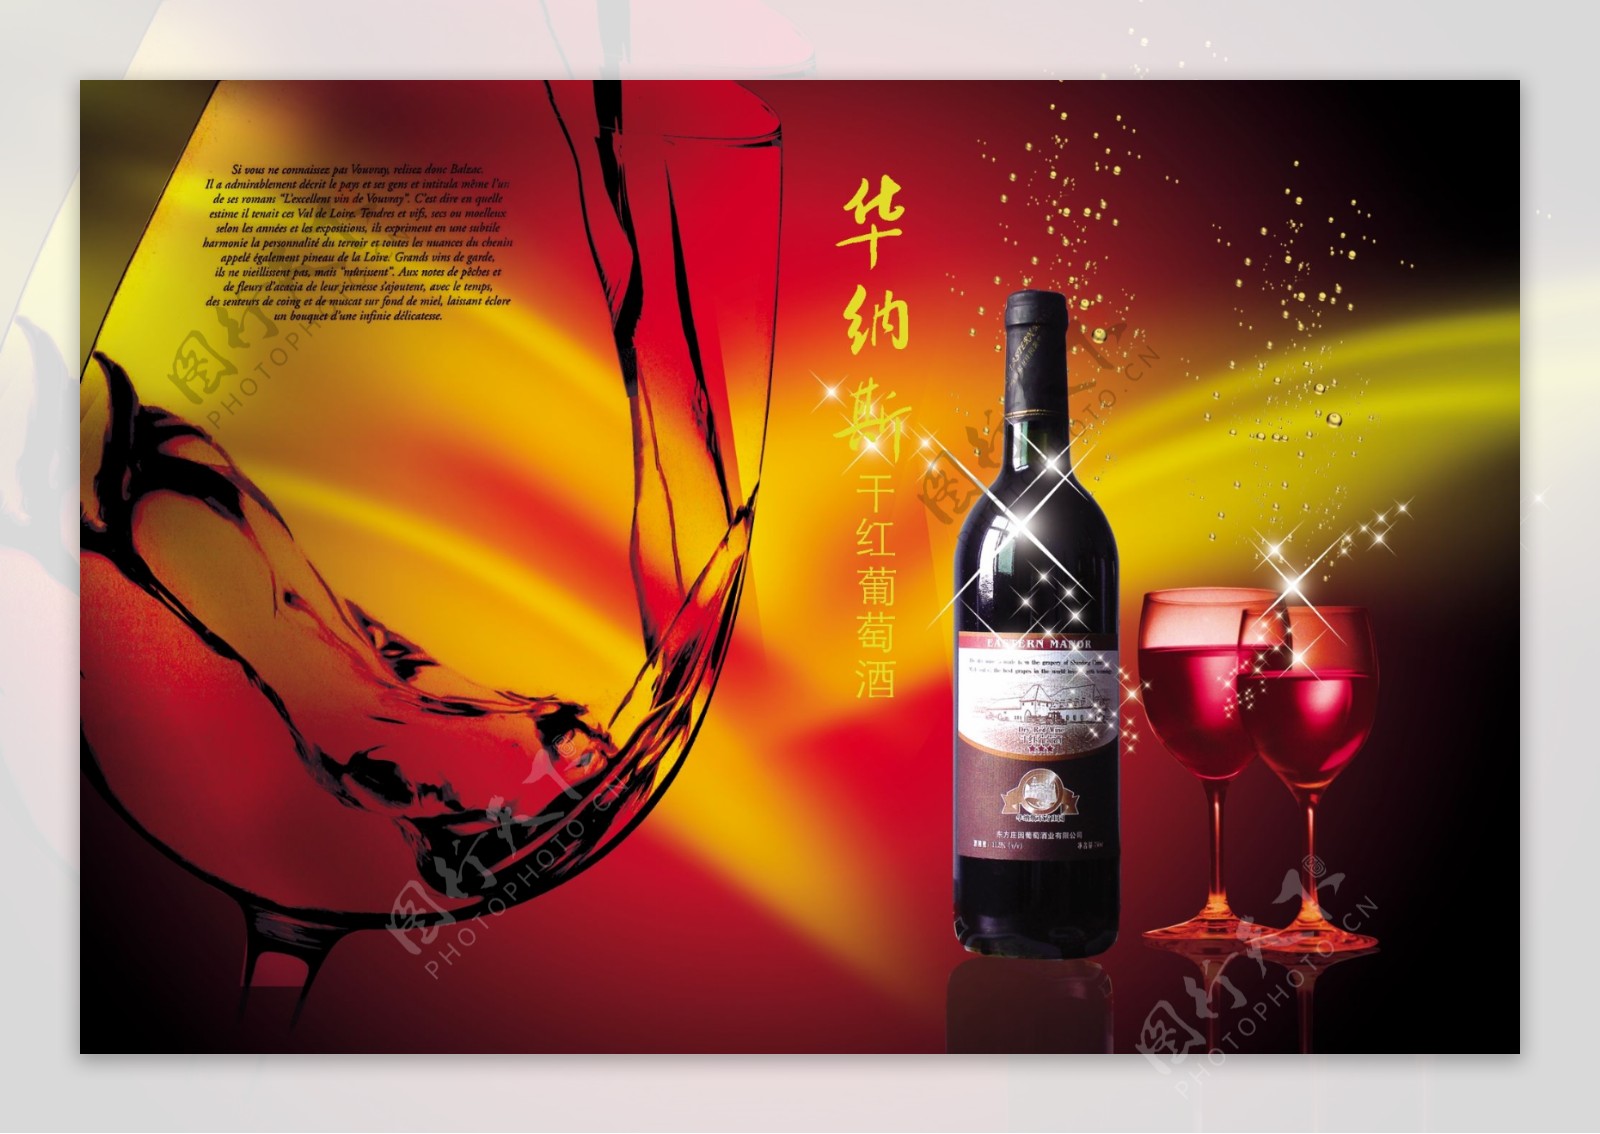 华纳斯红葡萄酒海报广告设计素材